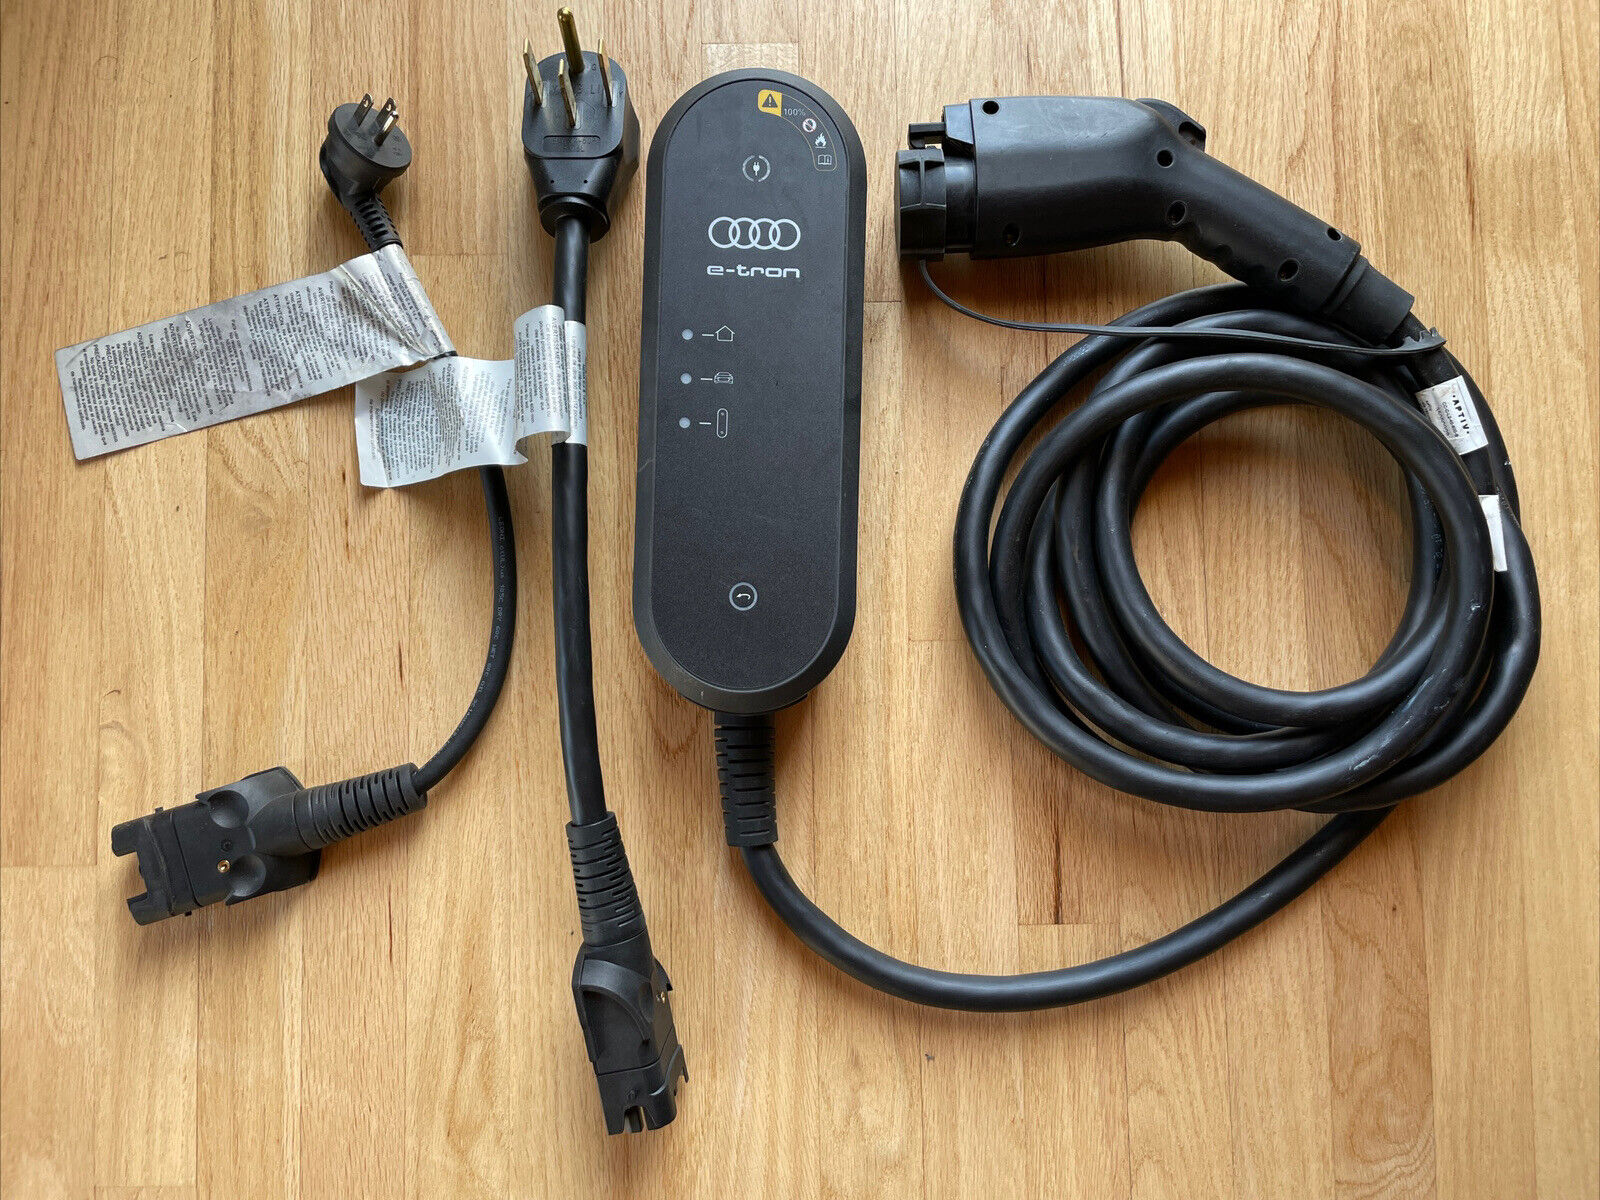 Audi e tron Charger Kit EV Universal Charging station 9.6kw 40A NEMA 5-15 14-50P